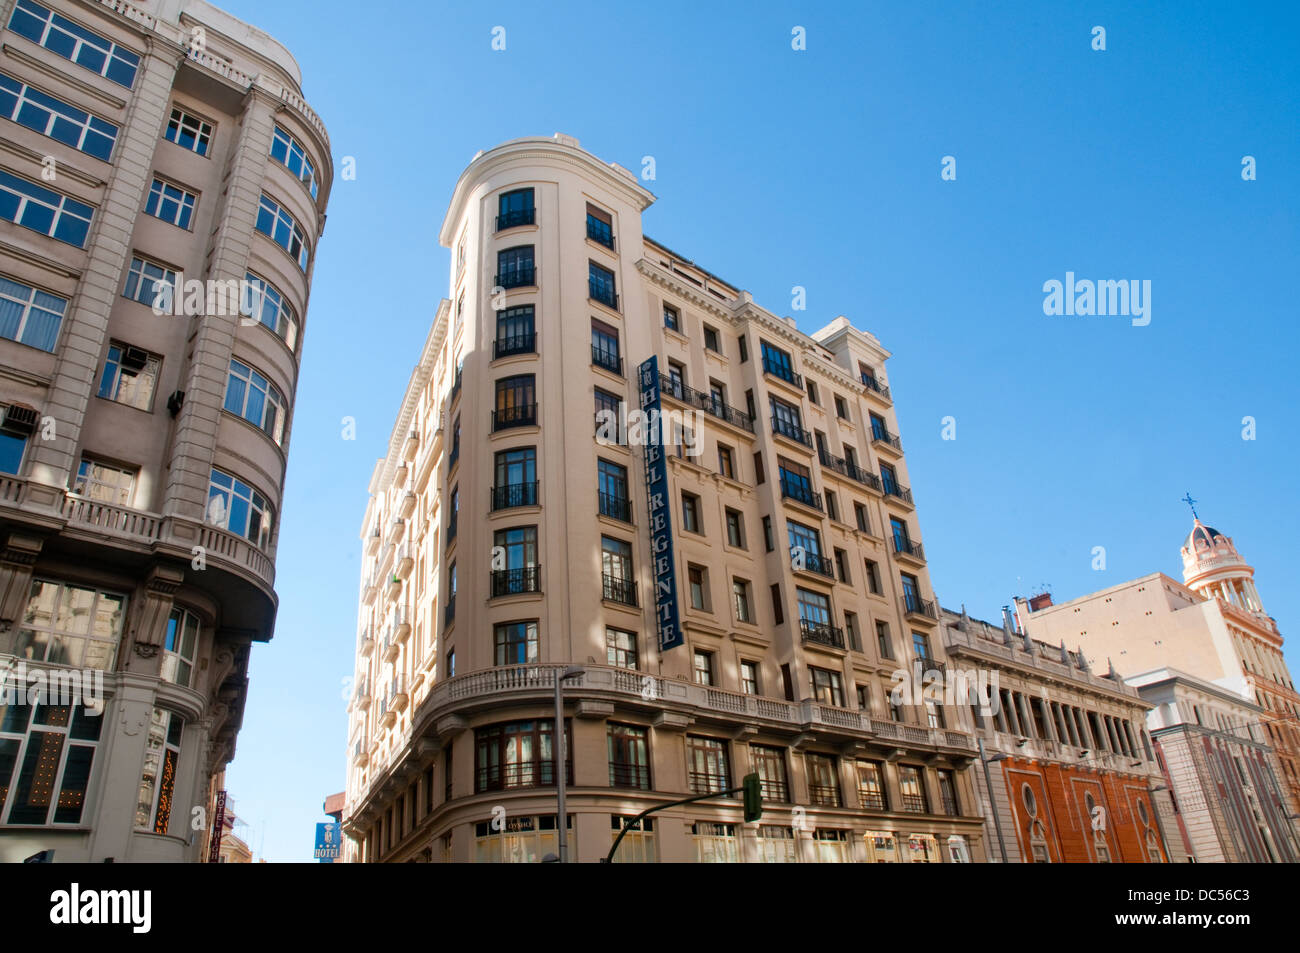 Fachada del edificio del Hotel Regente. Gran Via, Madrid, España. Foto de stock